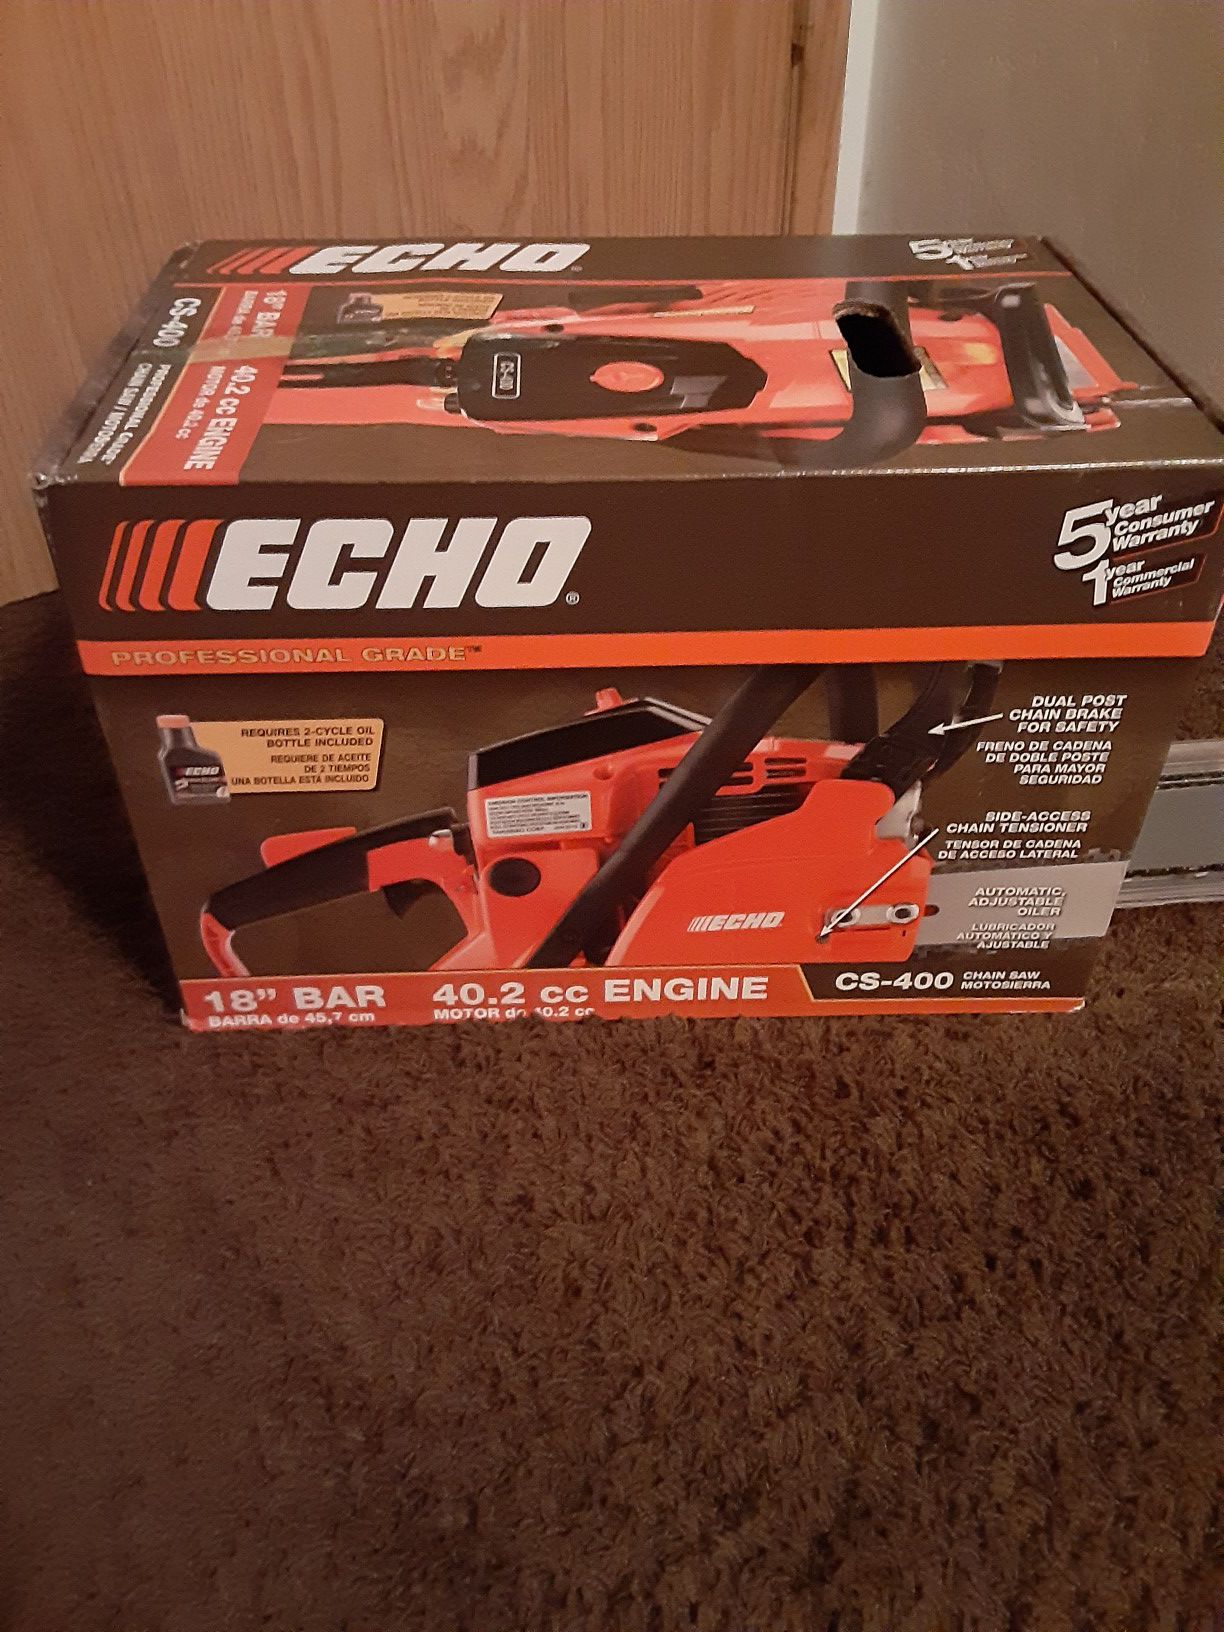 Brand new Chainsaw Echo 18"bar 40.2cc Engine